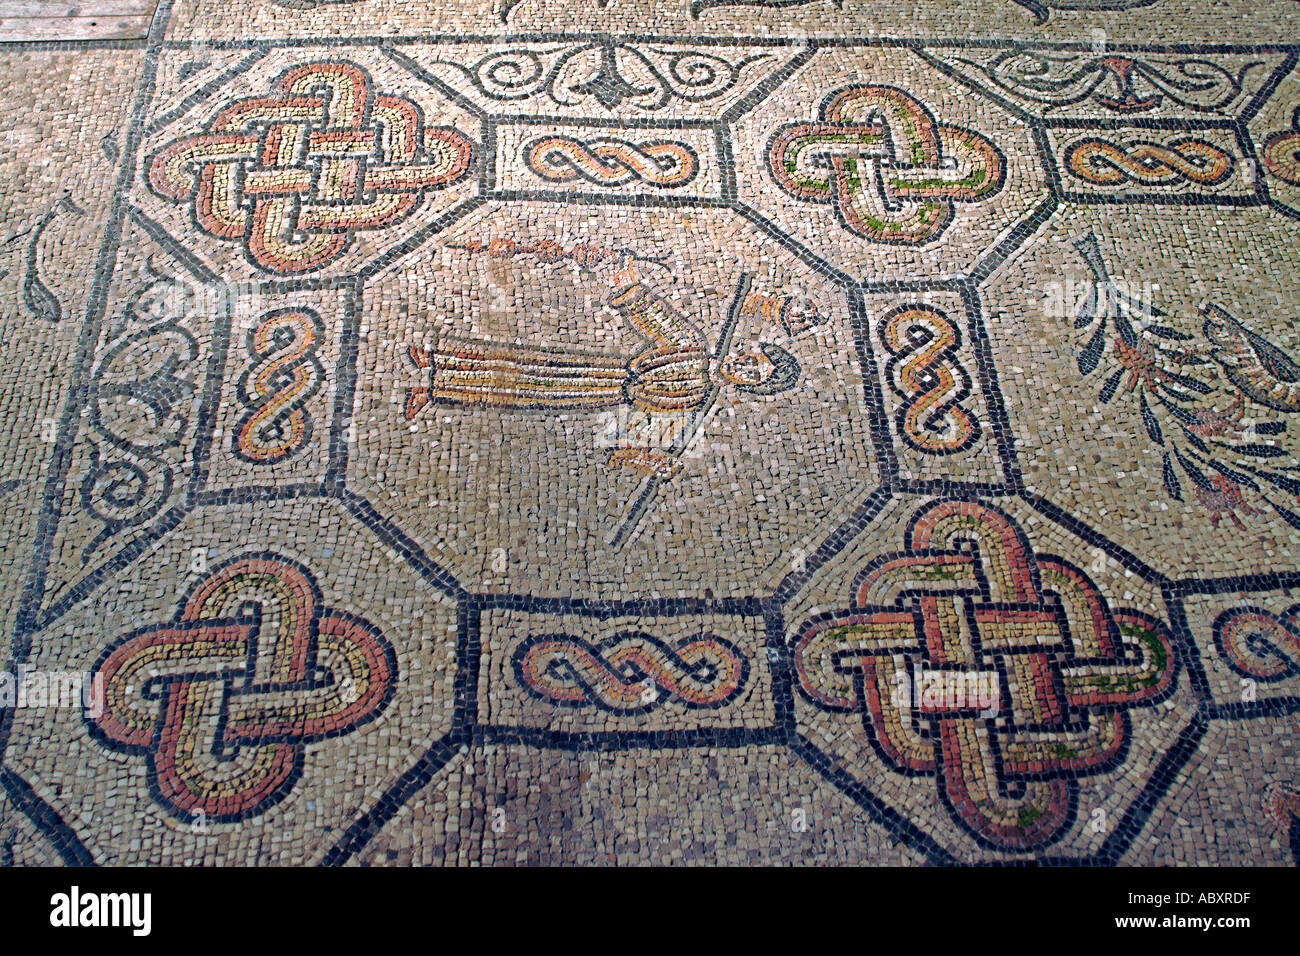 Il pavimento in mosaico della Basilica di Aquileia vicino a Grado nella regione Friuli Venezia Giulia del nord est dell'Italia. Foto Stock